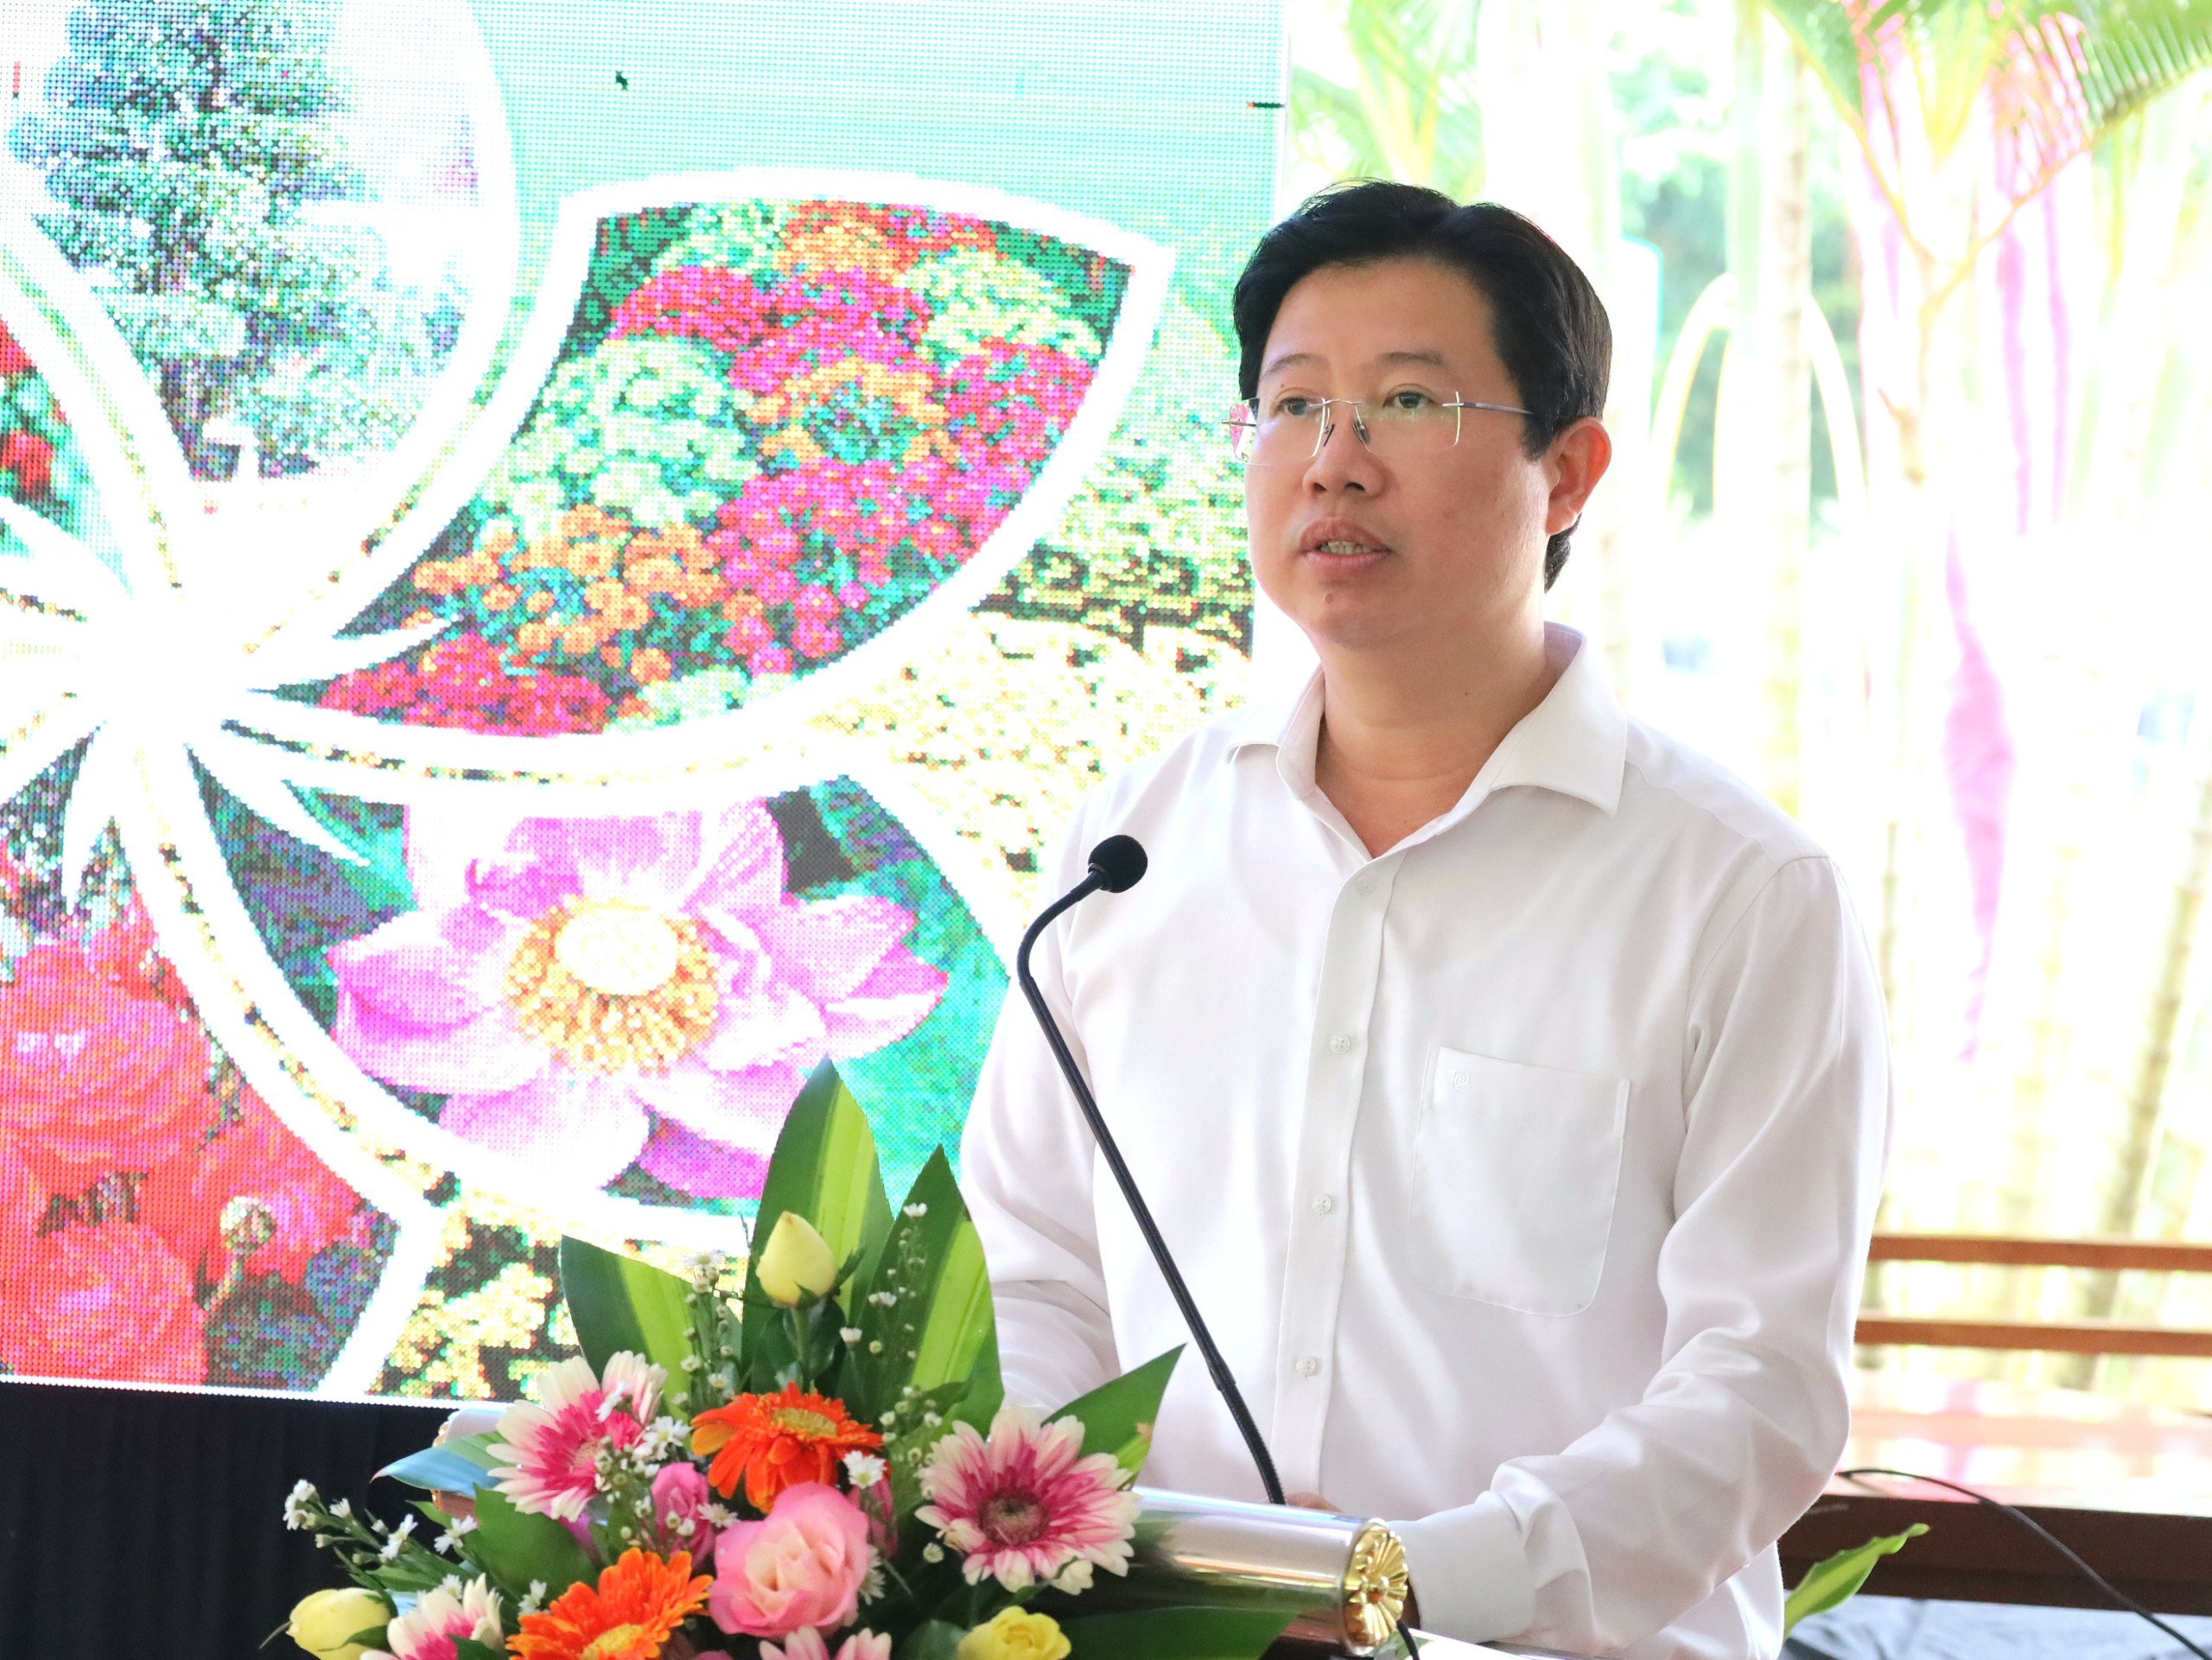 Ông Huỳnh Minh Tuấn - Phó Chủ tịch UBND tỉnh Đồng Tháp, Trưởng Ban tổ chức Festival phát biểu tại buổi họp báo.